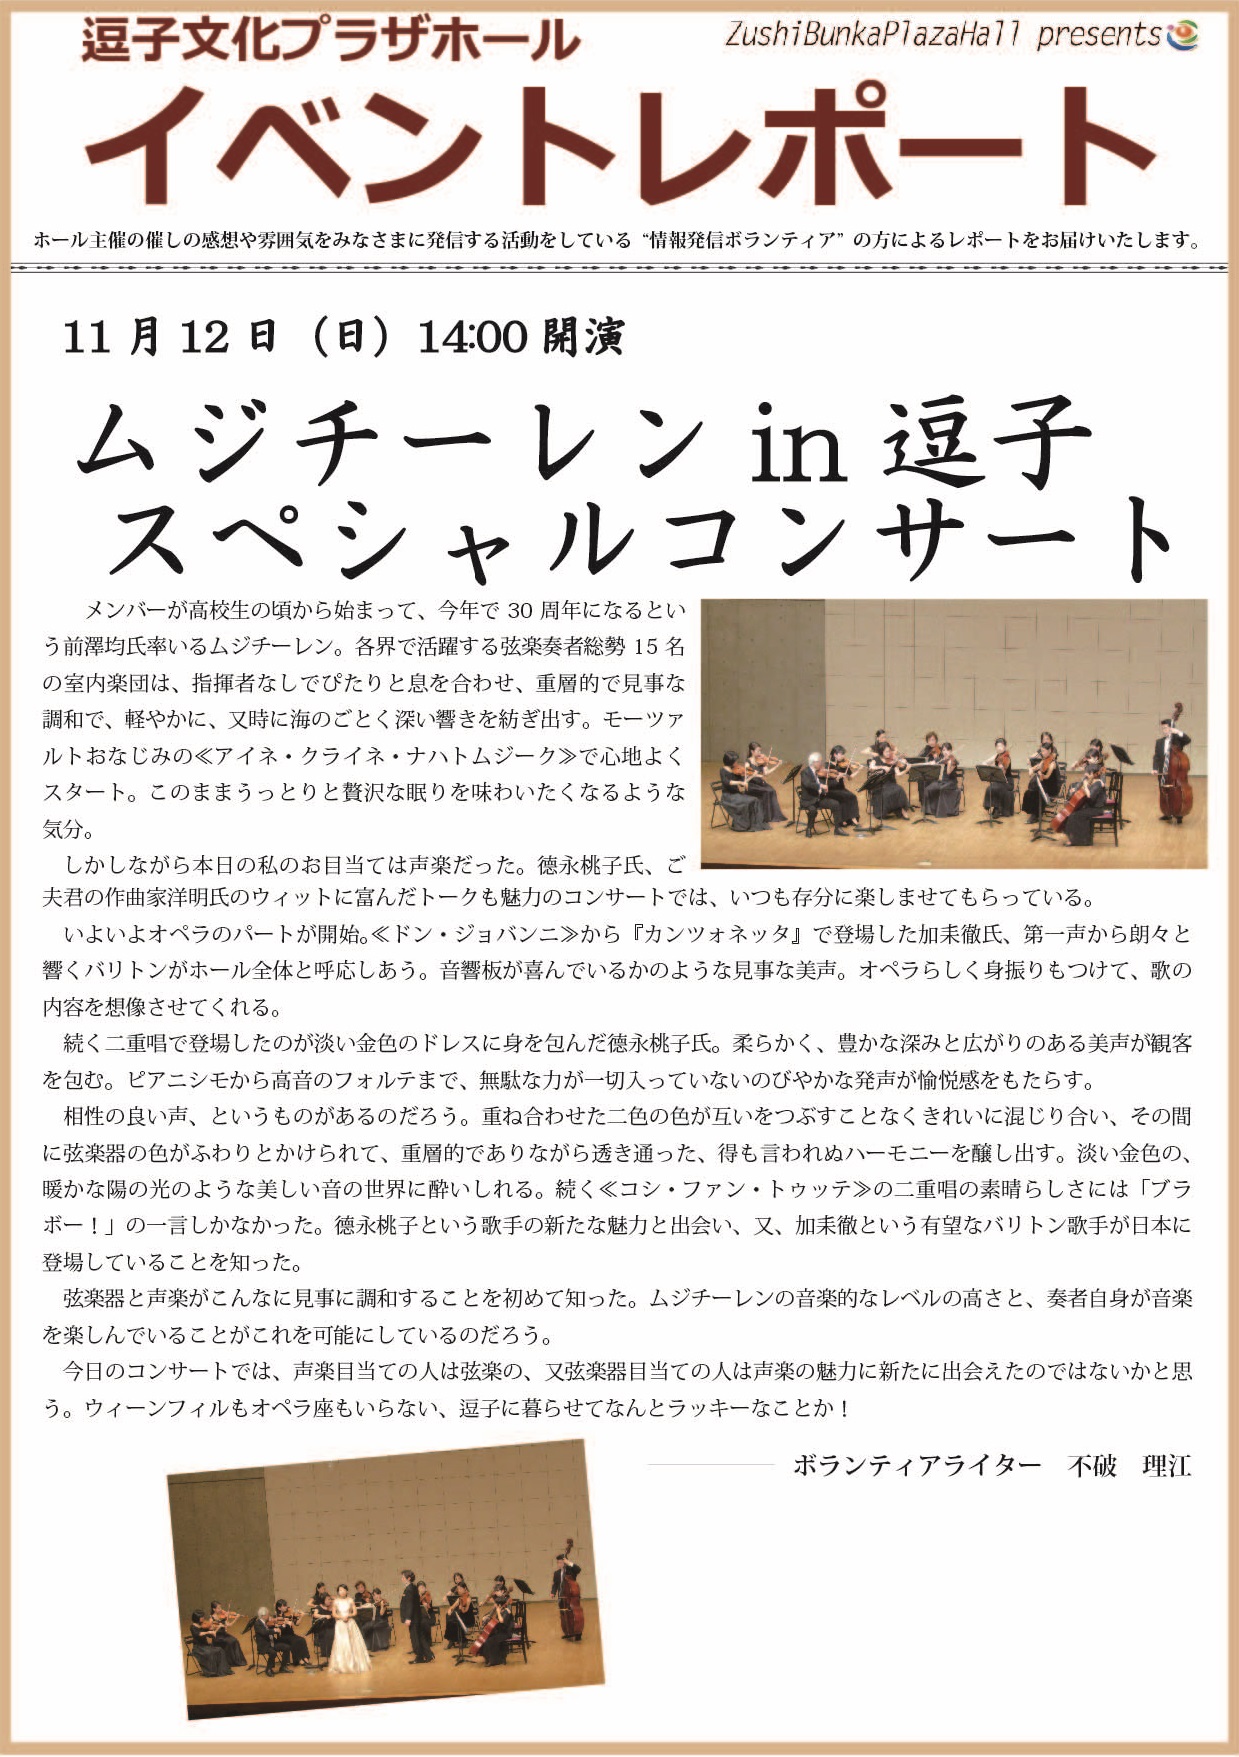 イベントレポート「ムジチーレンin逗子スペシャルコンサート」2017年11月12日（日）開催